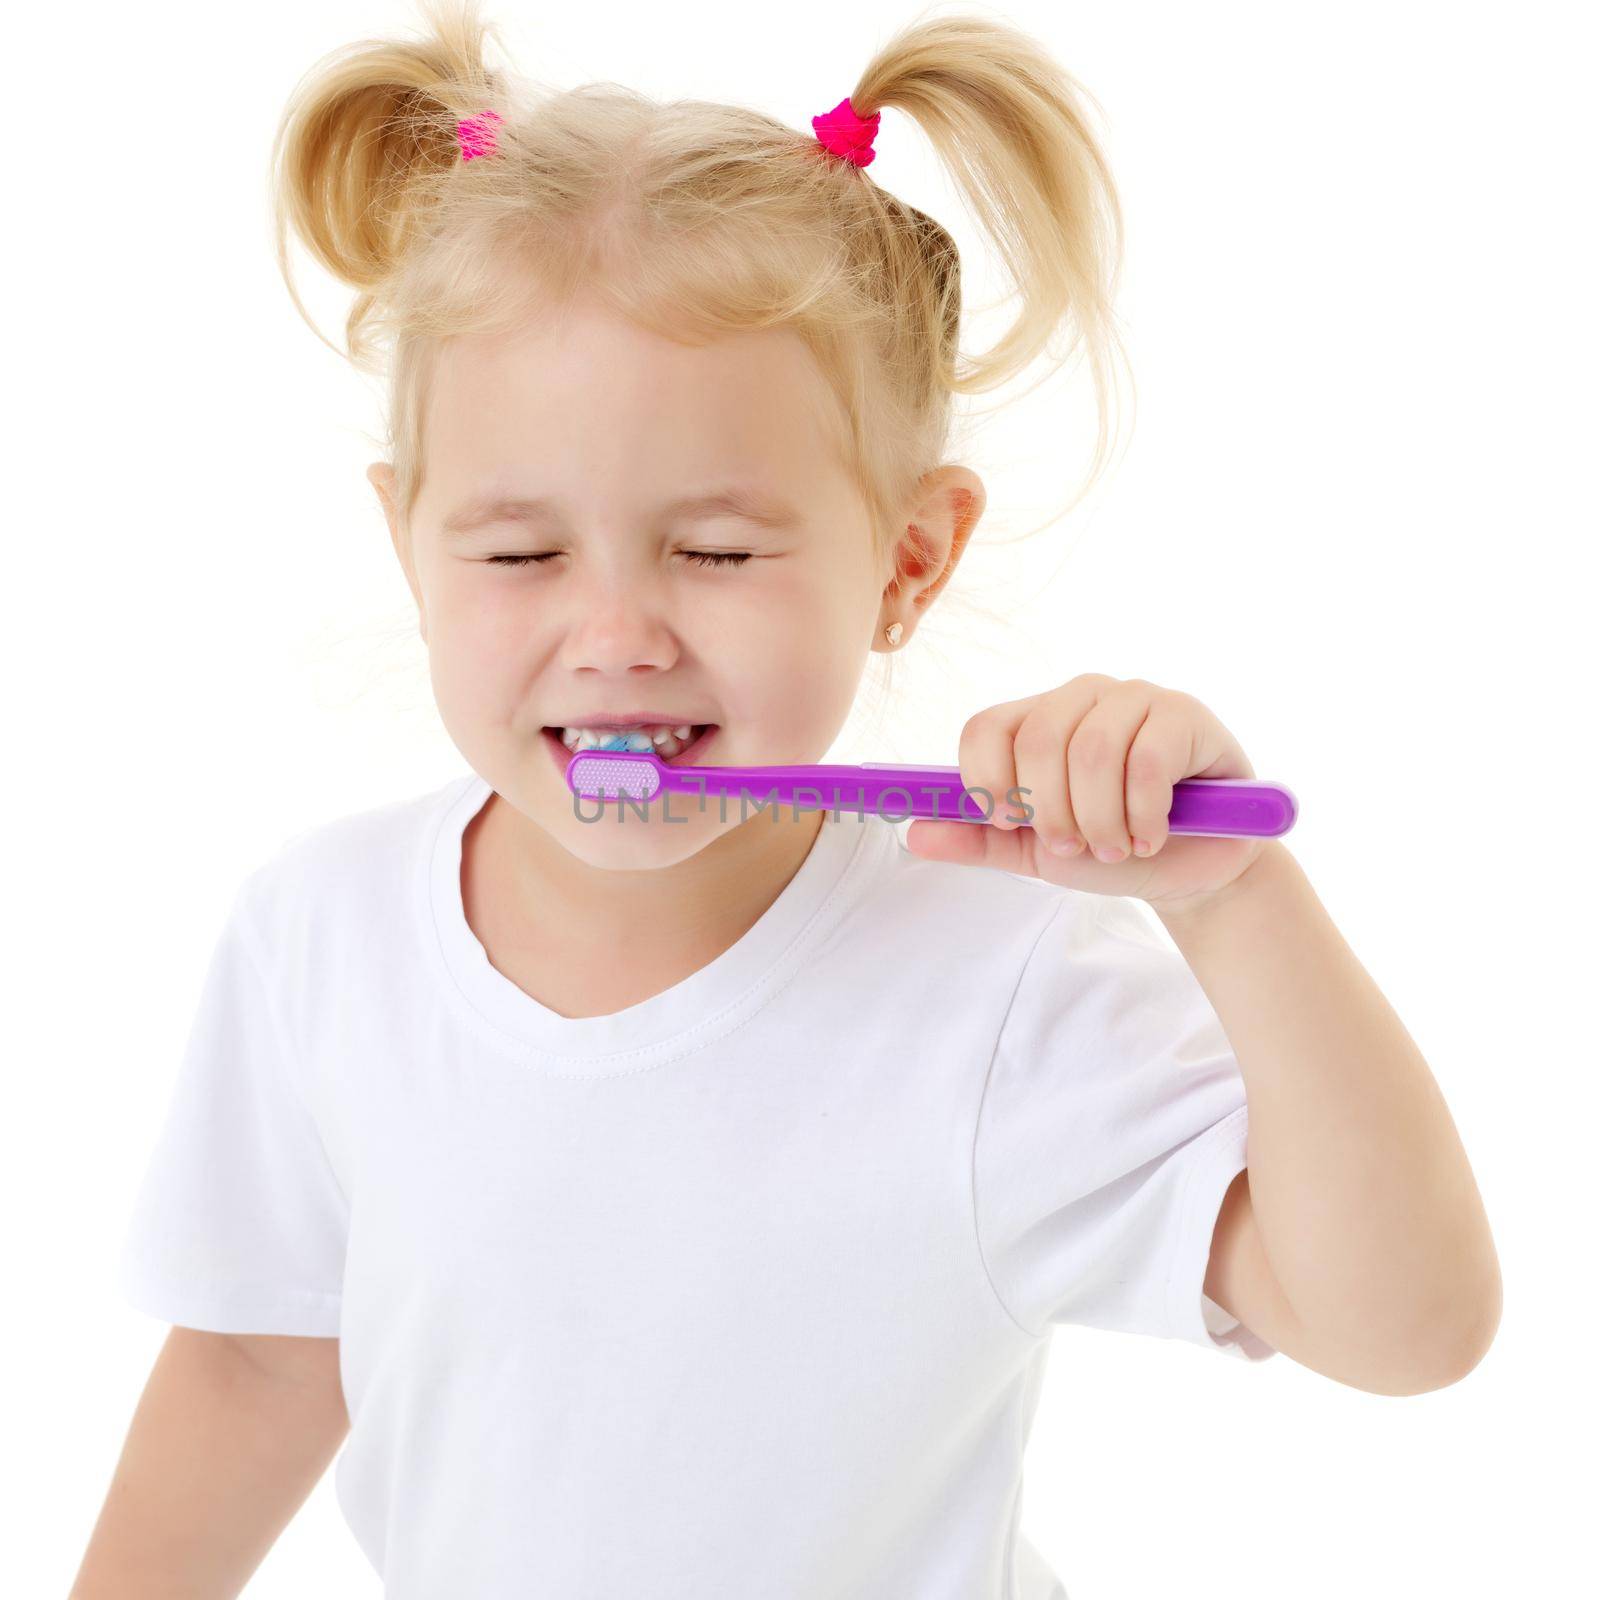 A little girl brushes her teeth. by kolesnikov_studio